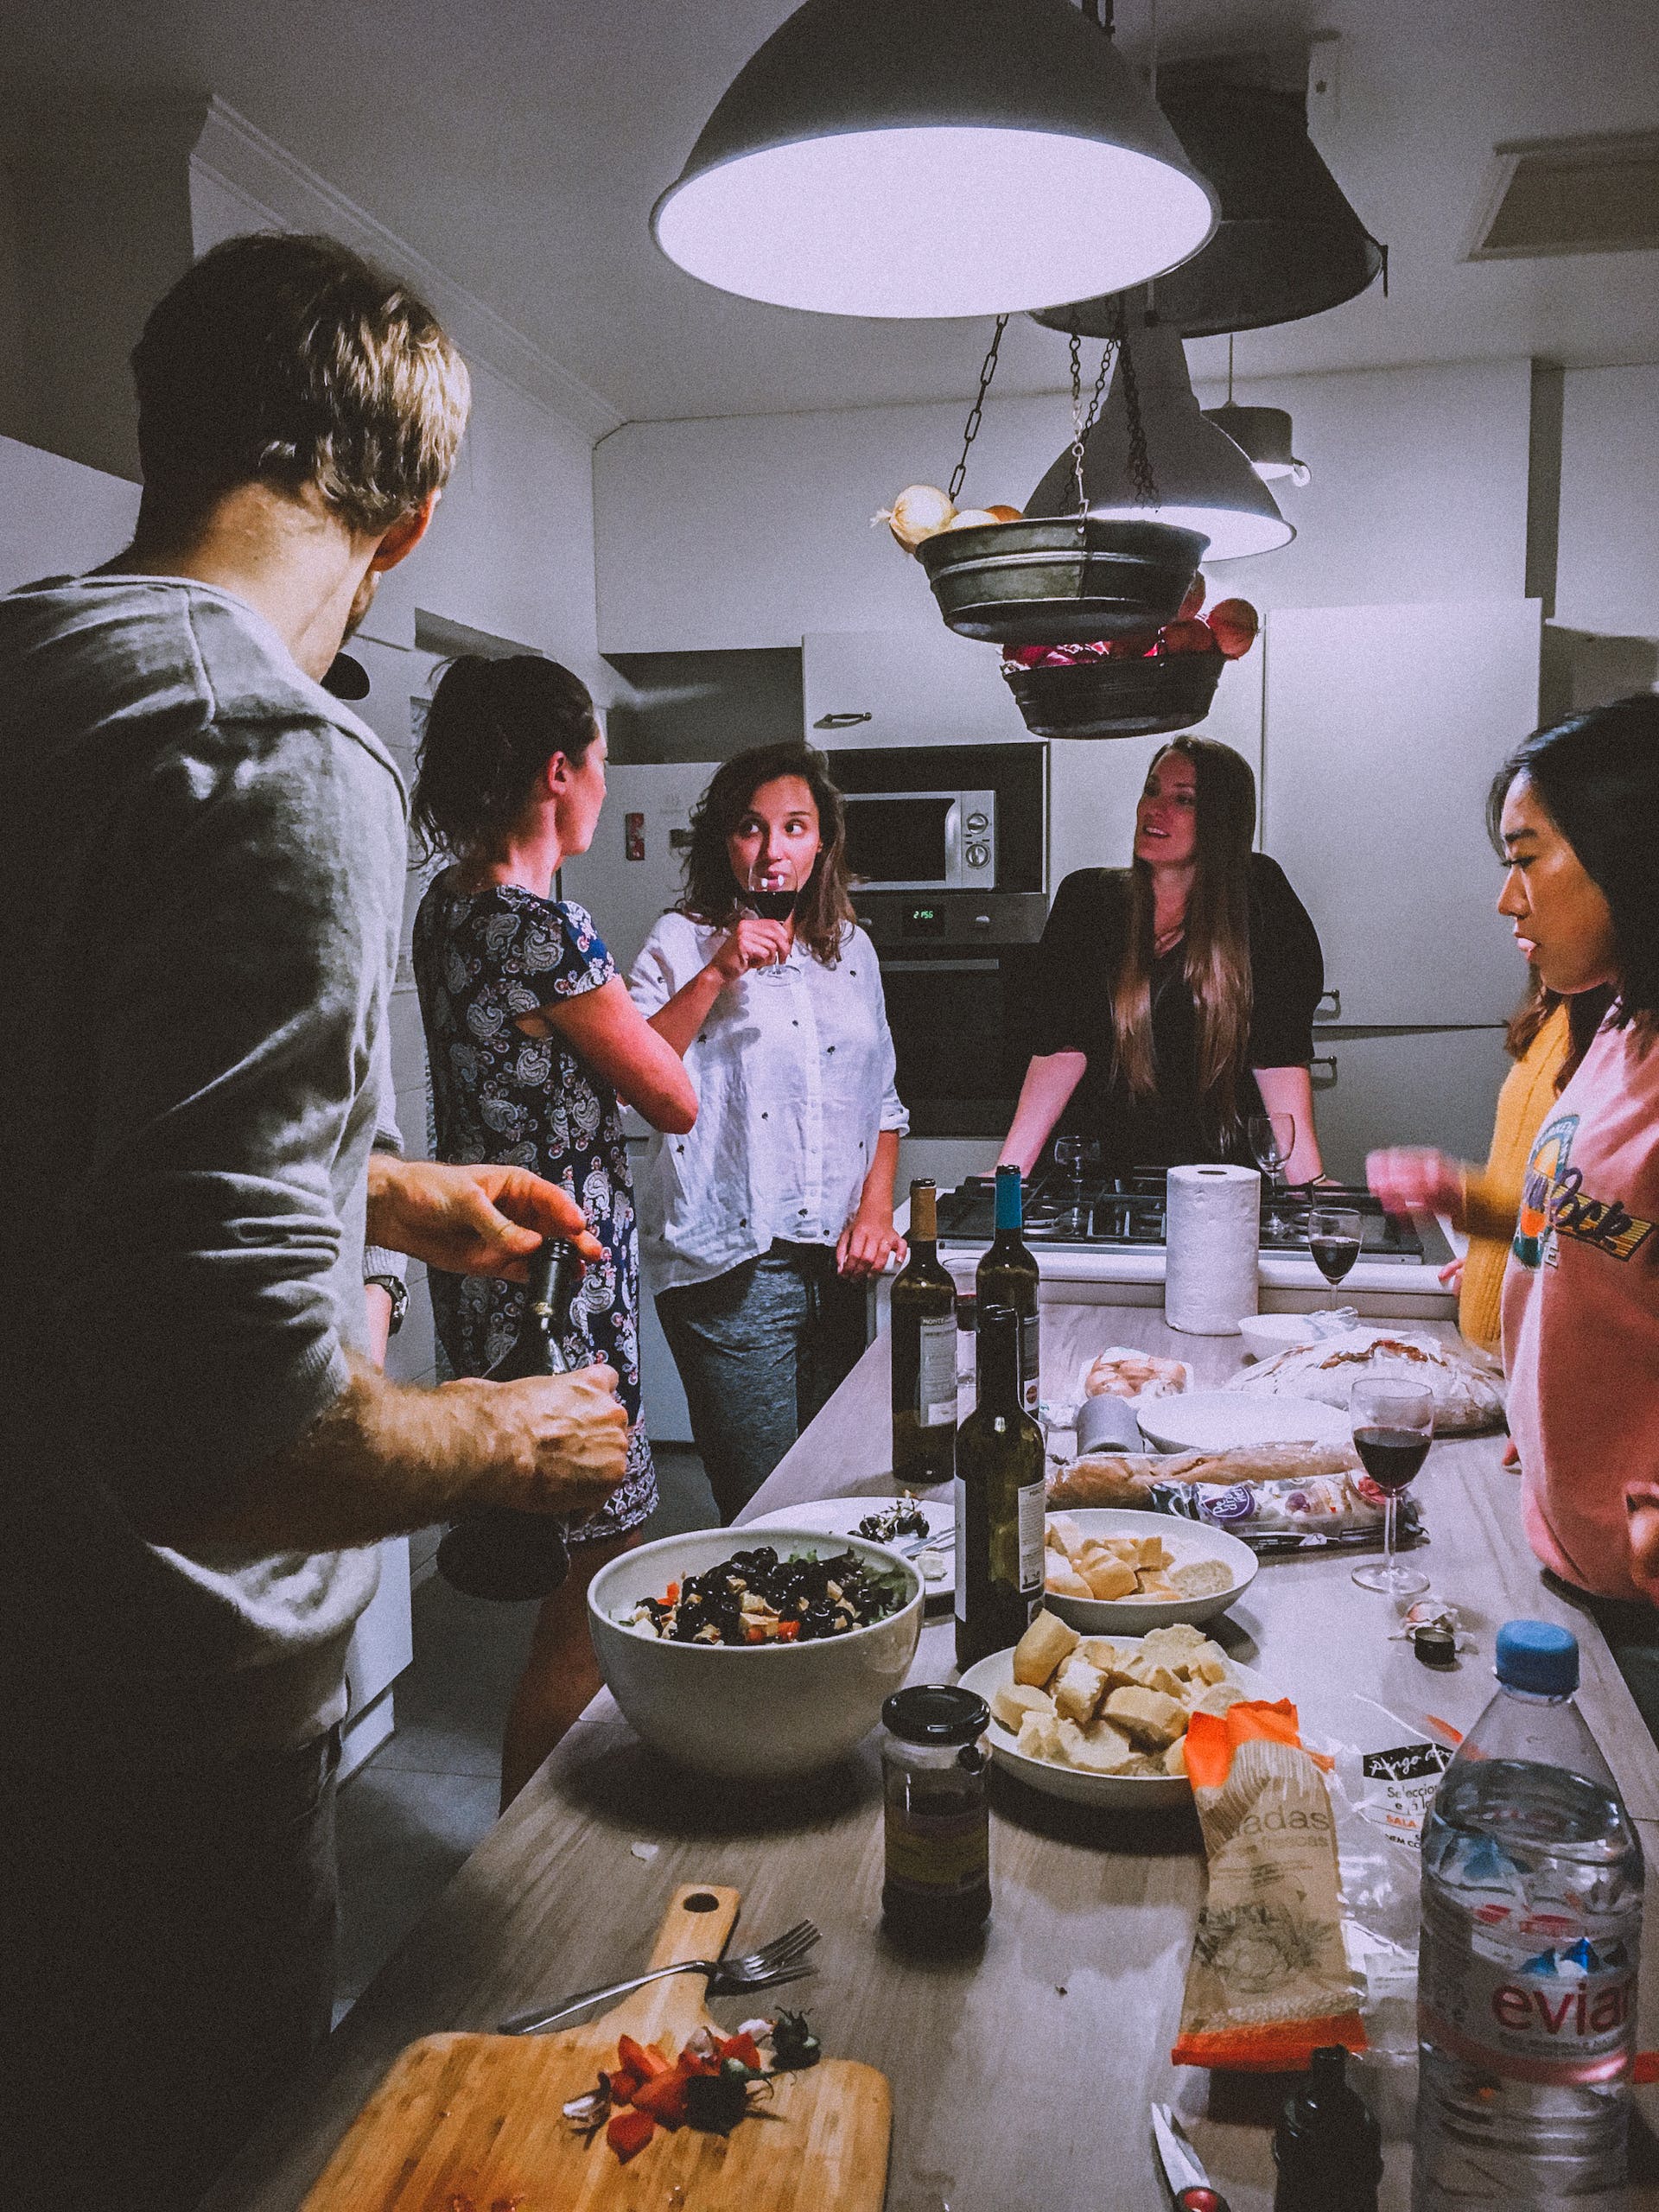 Menschen gemeinsam in der Küche | Quelle: Pexels